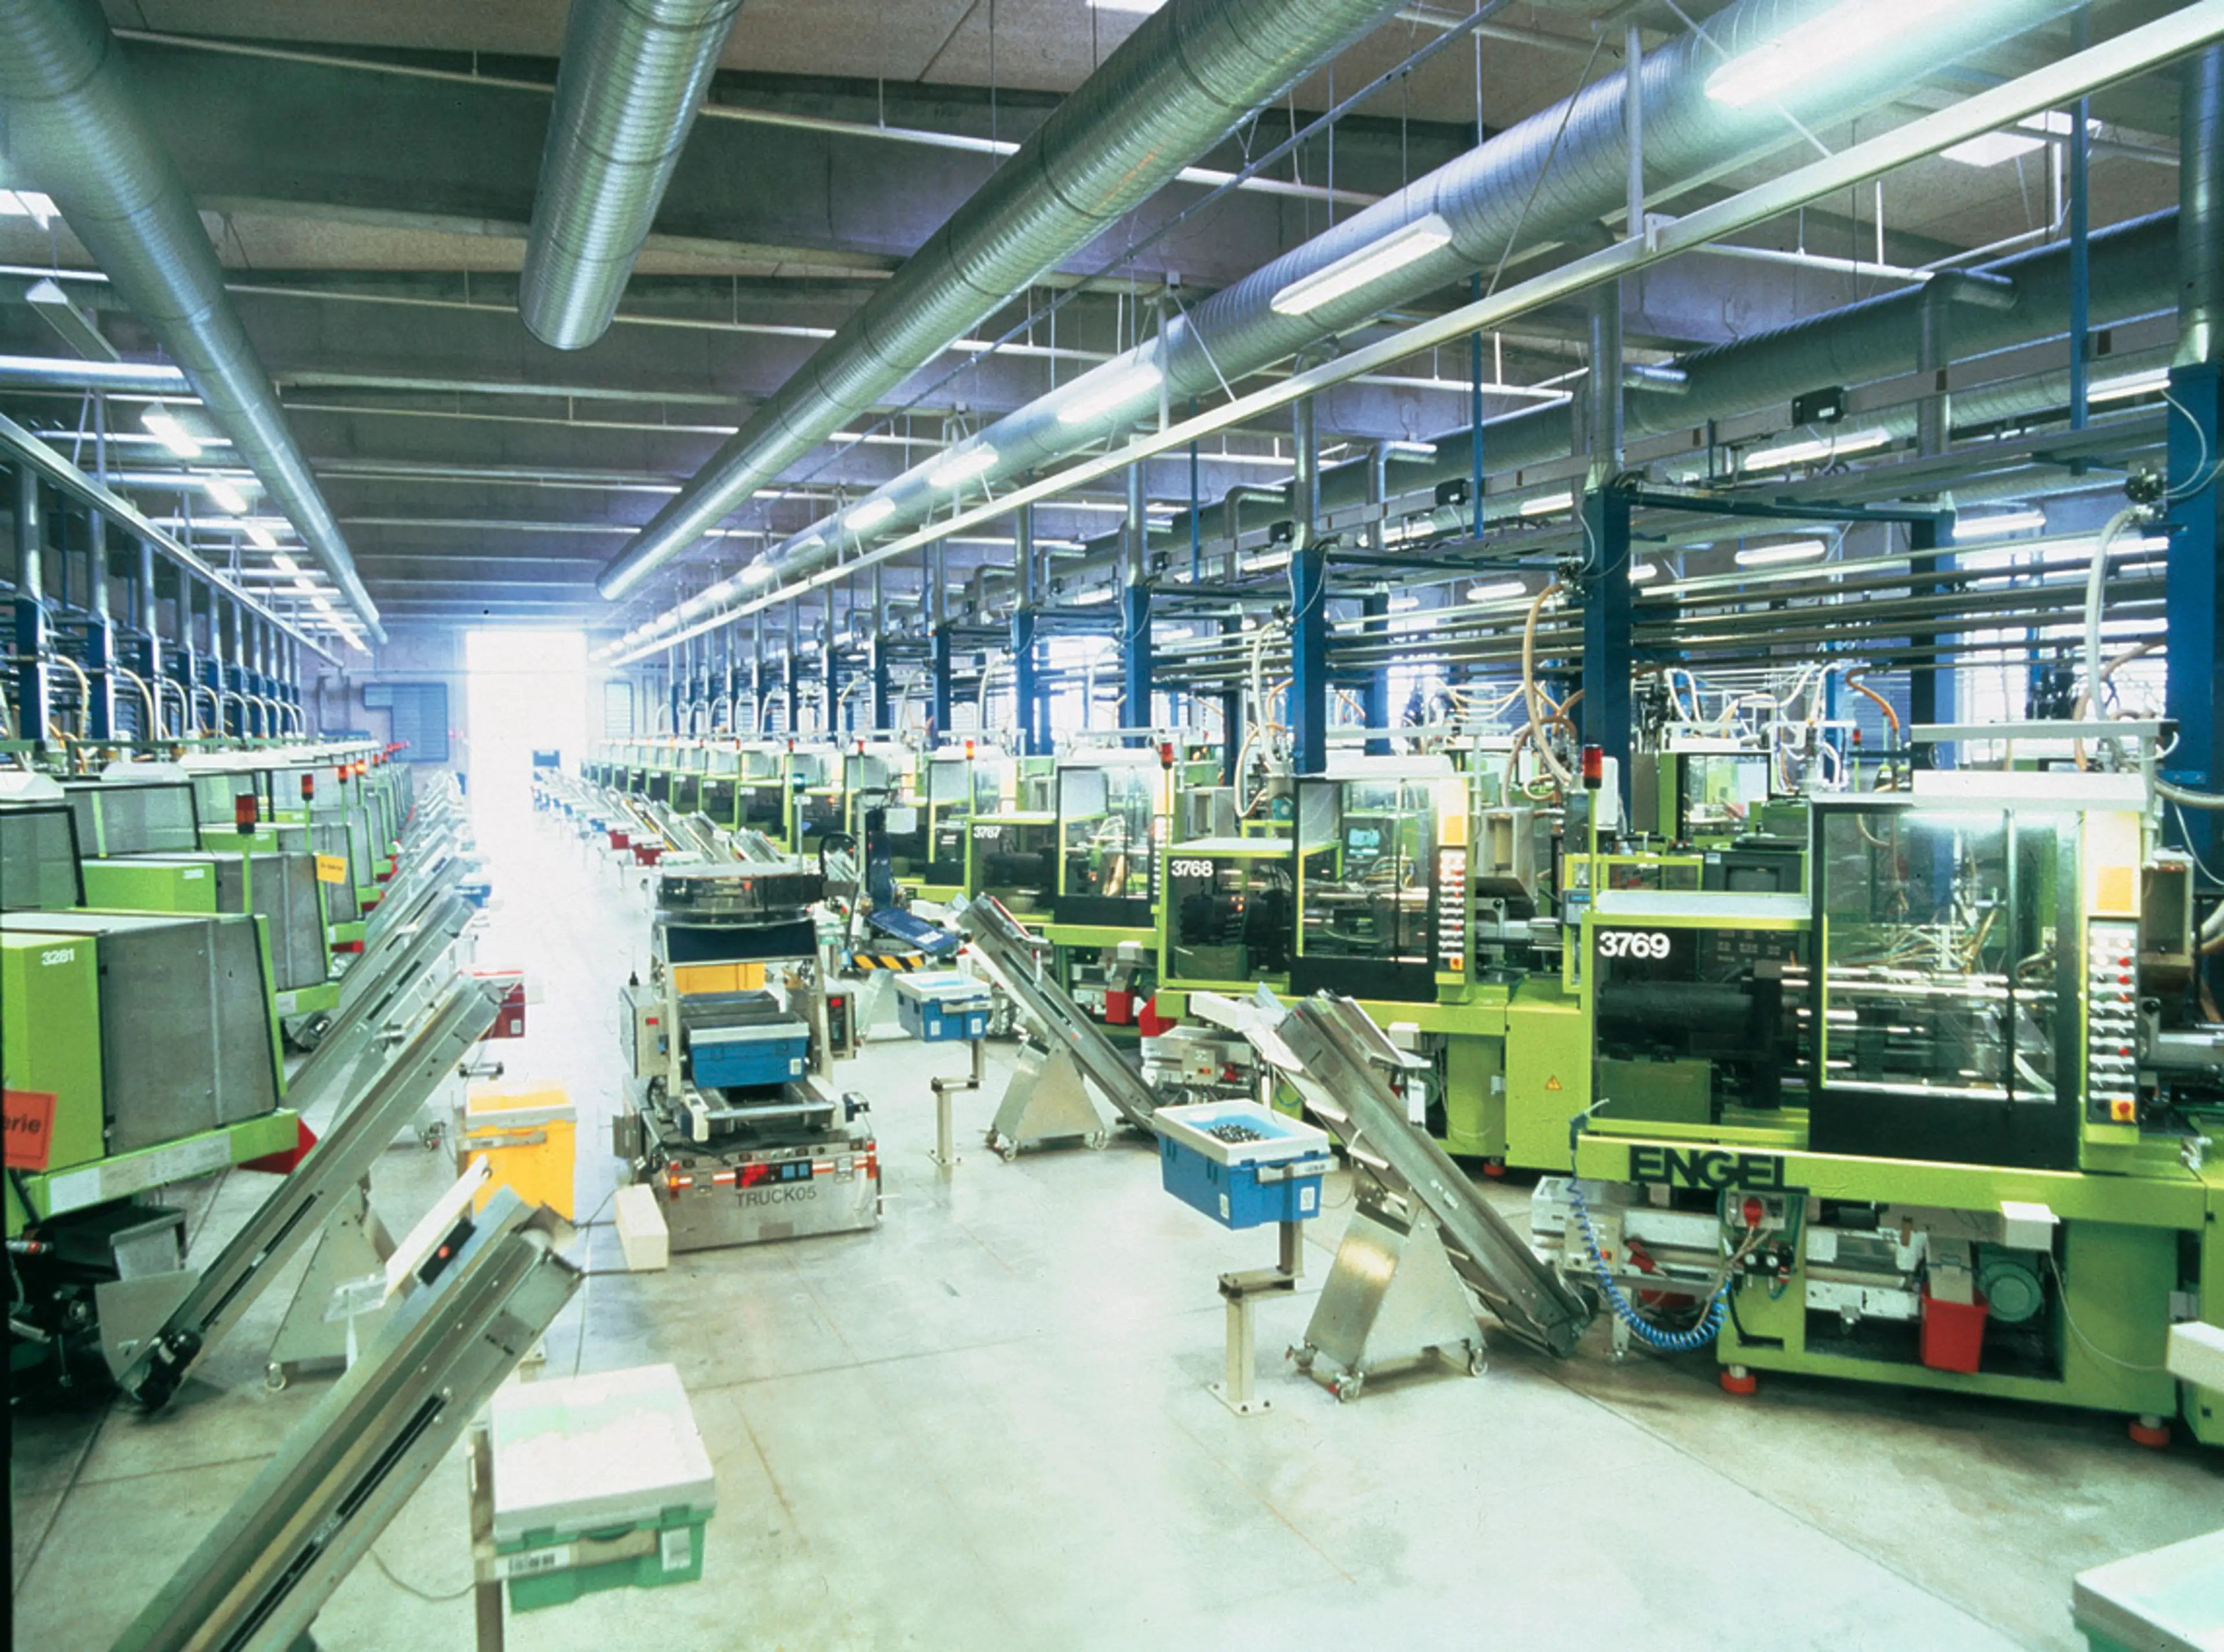 Inside the Kornmarken factory